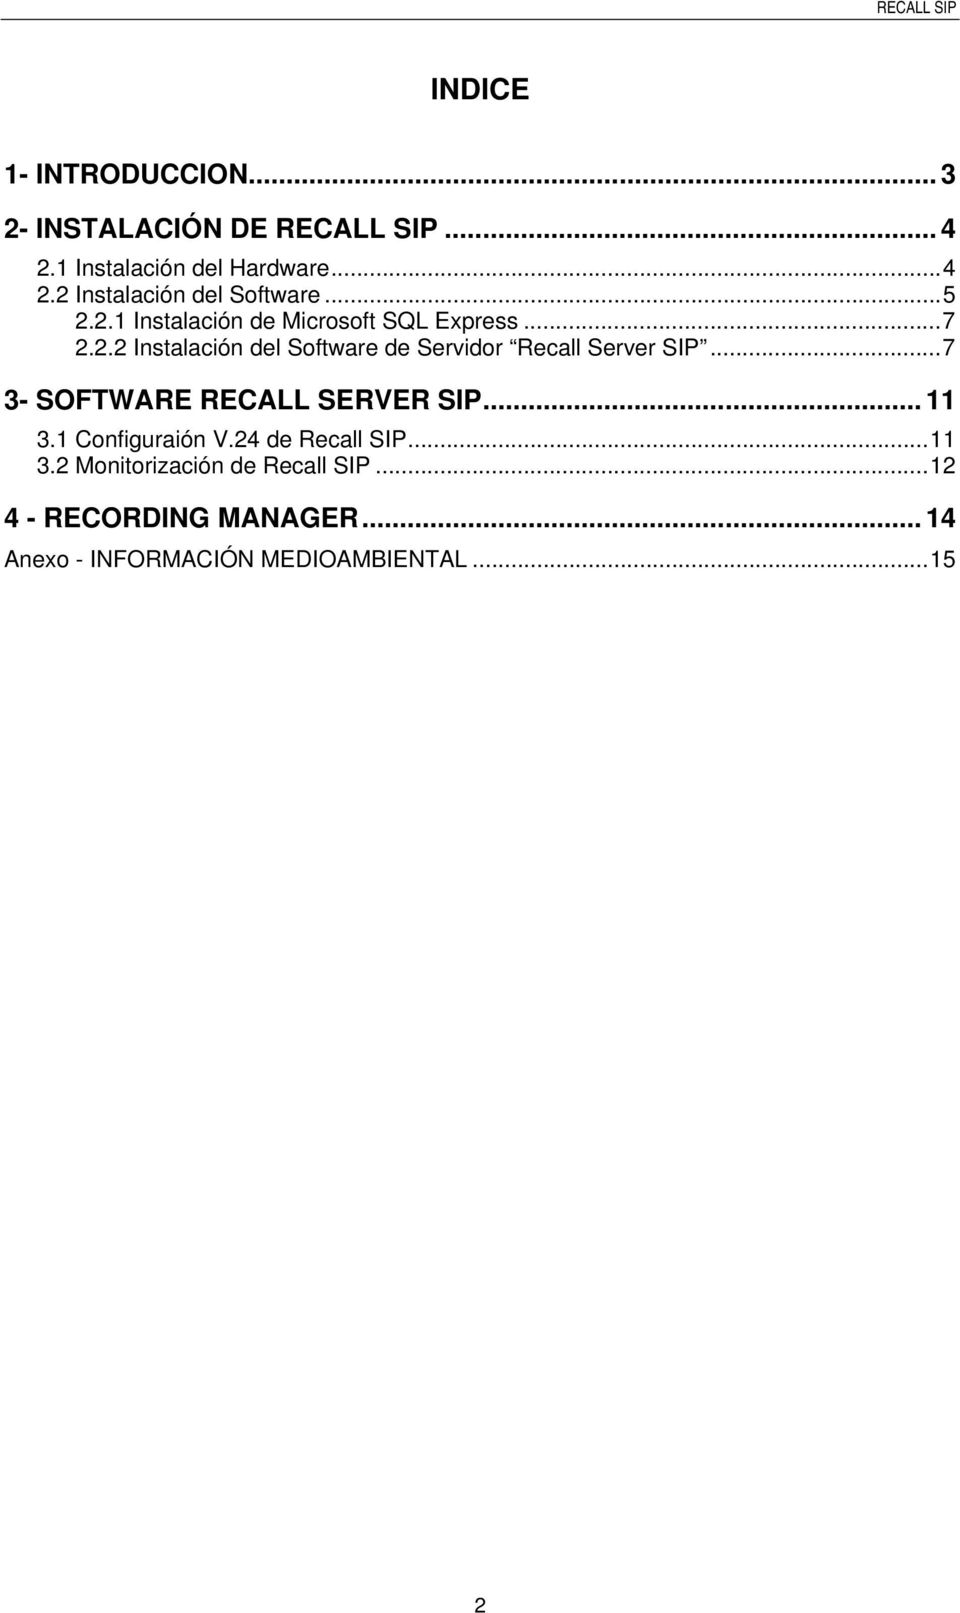 ..7 3- SOFTWARE RECALL SERVER SIP... 11 3.1 Configuraión V.24 de Recall SIP...11 3.2 Monitorización de Recall SIP.